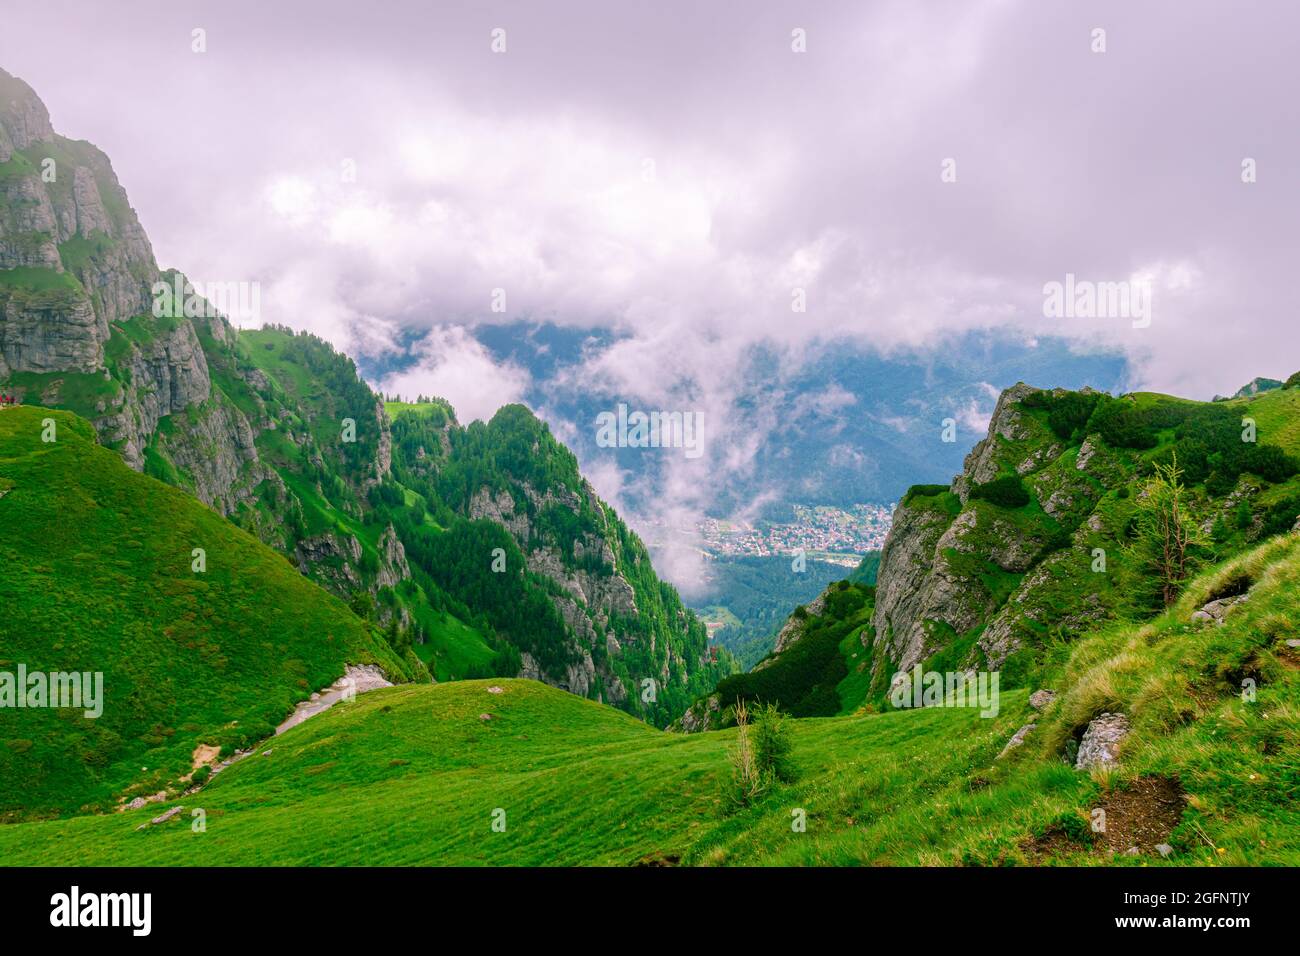 Photographie de paysage d'un ravin dans les montagnes en été avec des nuages et un temps brumeux. La photographie a été prise à côté de la cabine de Caraiman, en Roumanie Banque D'Images